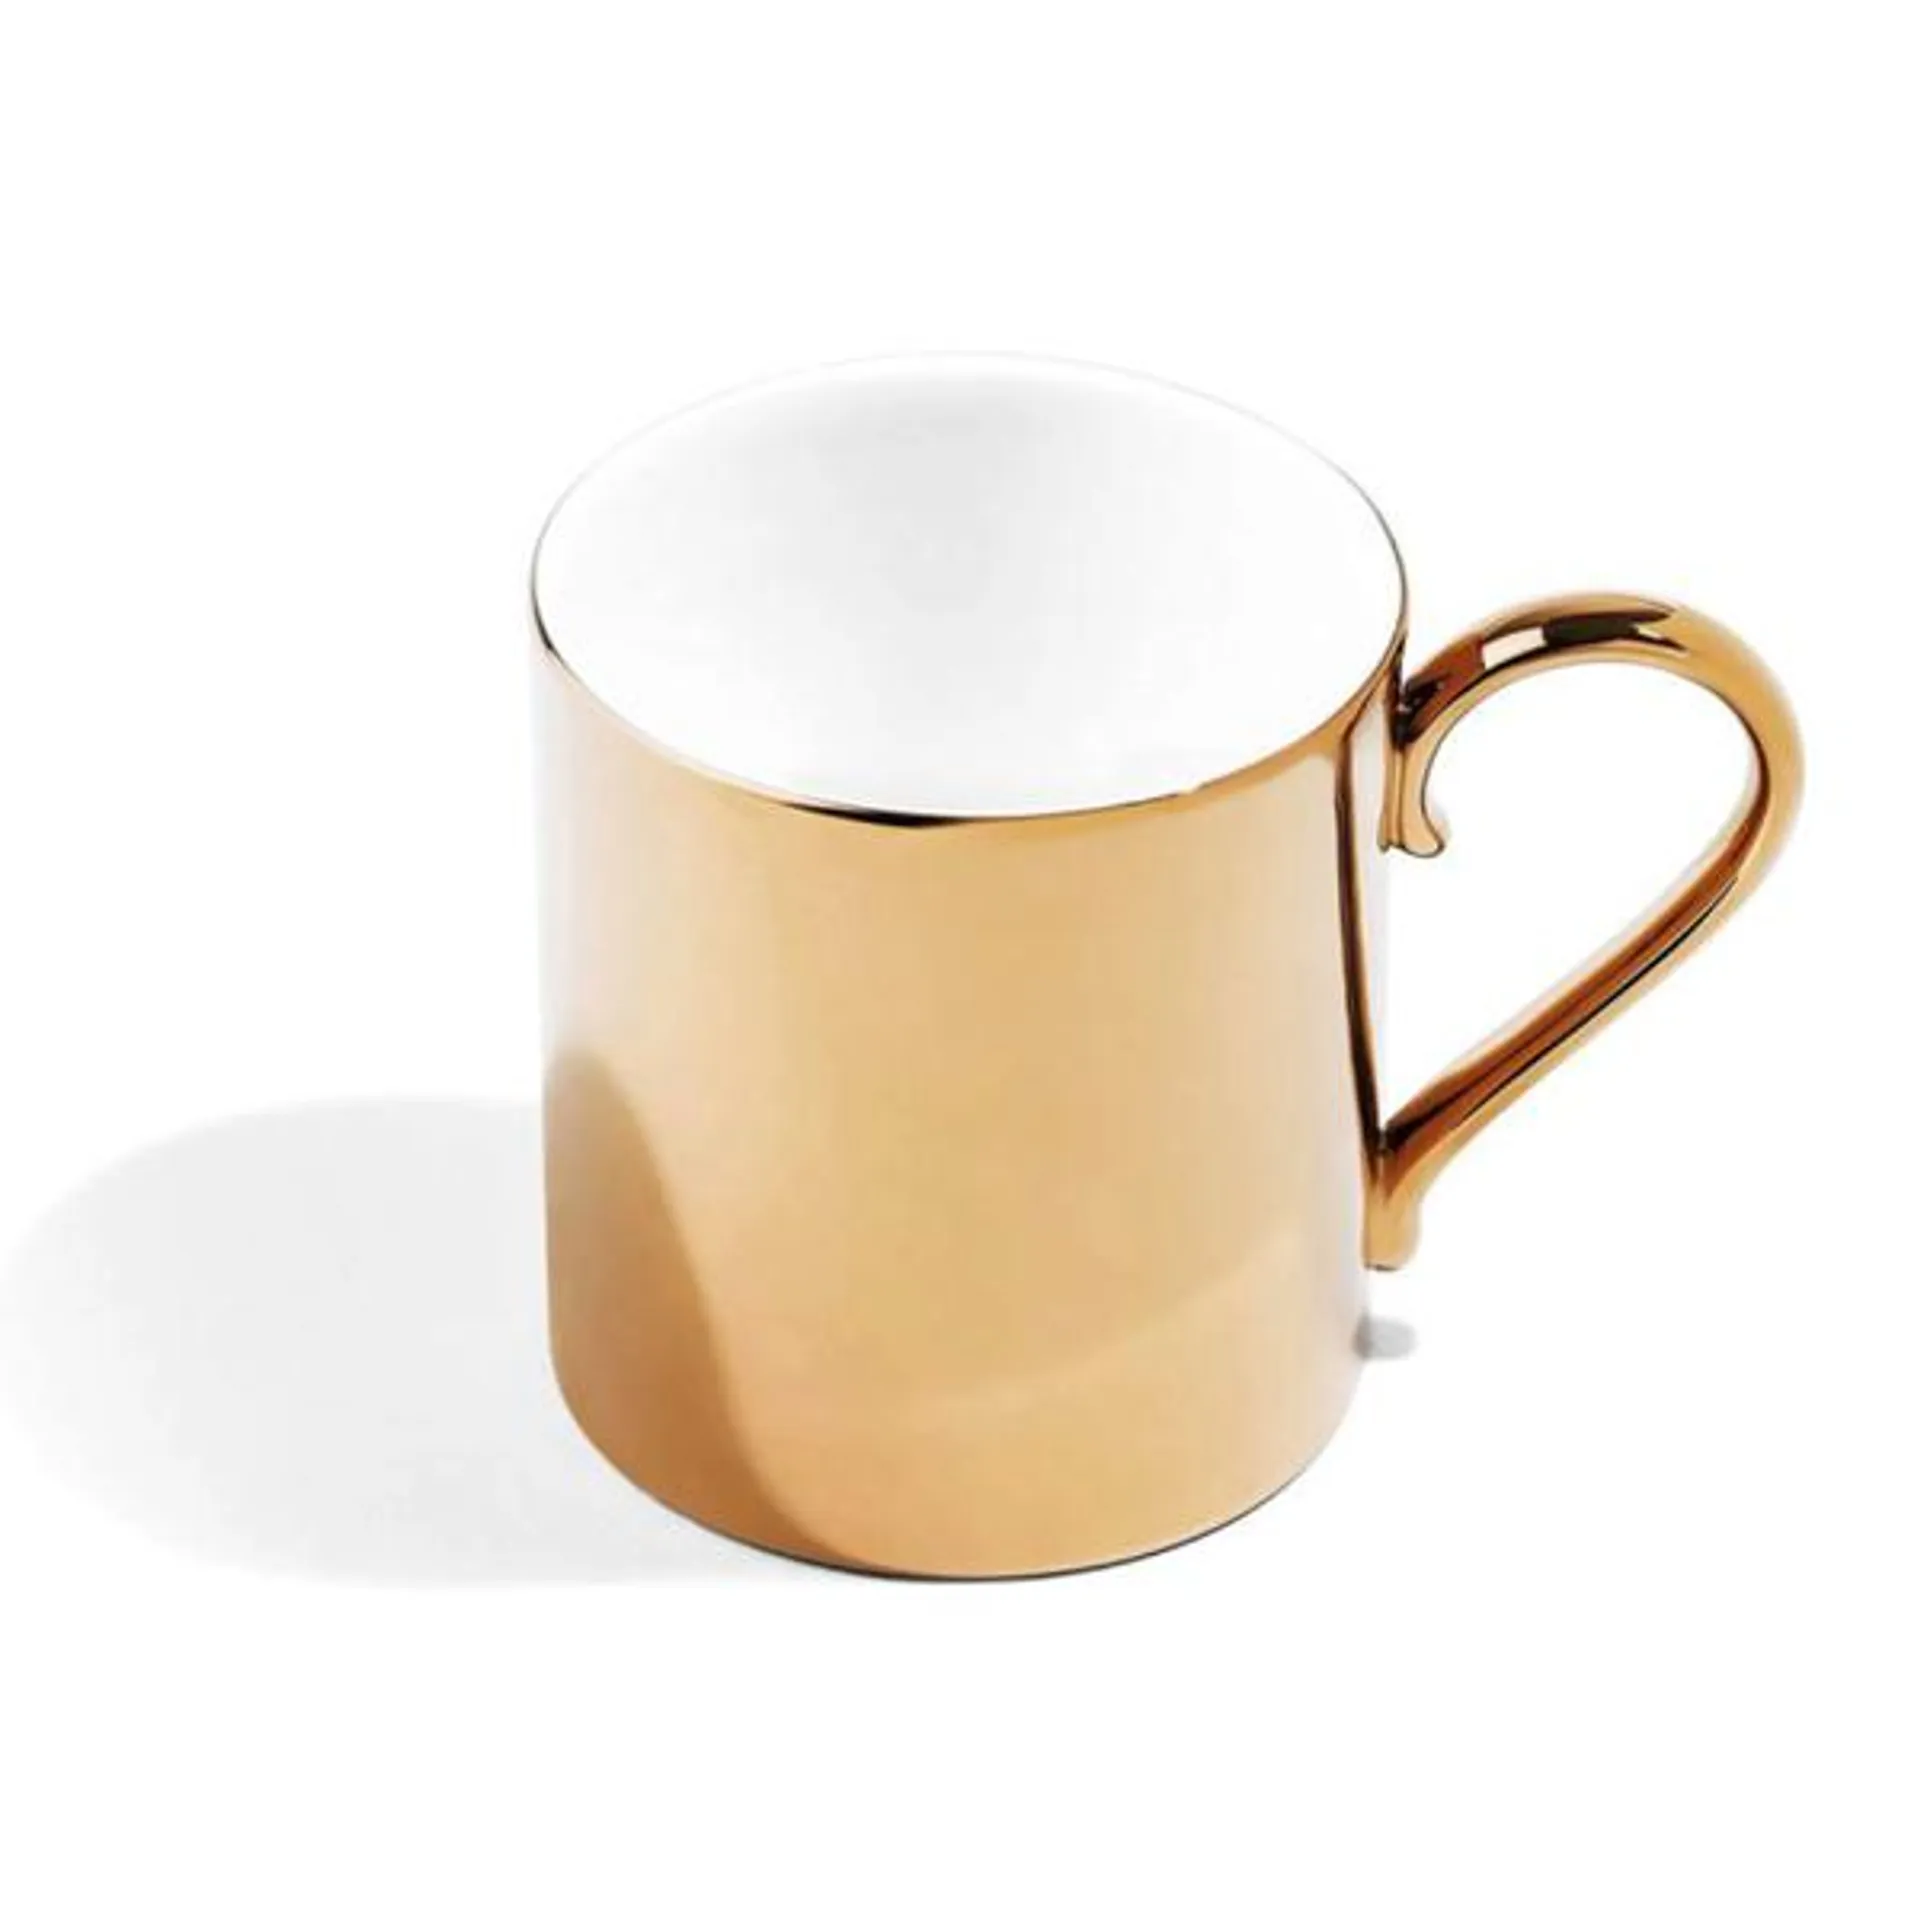 Richard Brendon Reflect Mug Gold - RBRMG